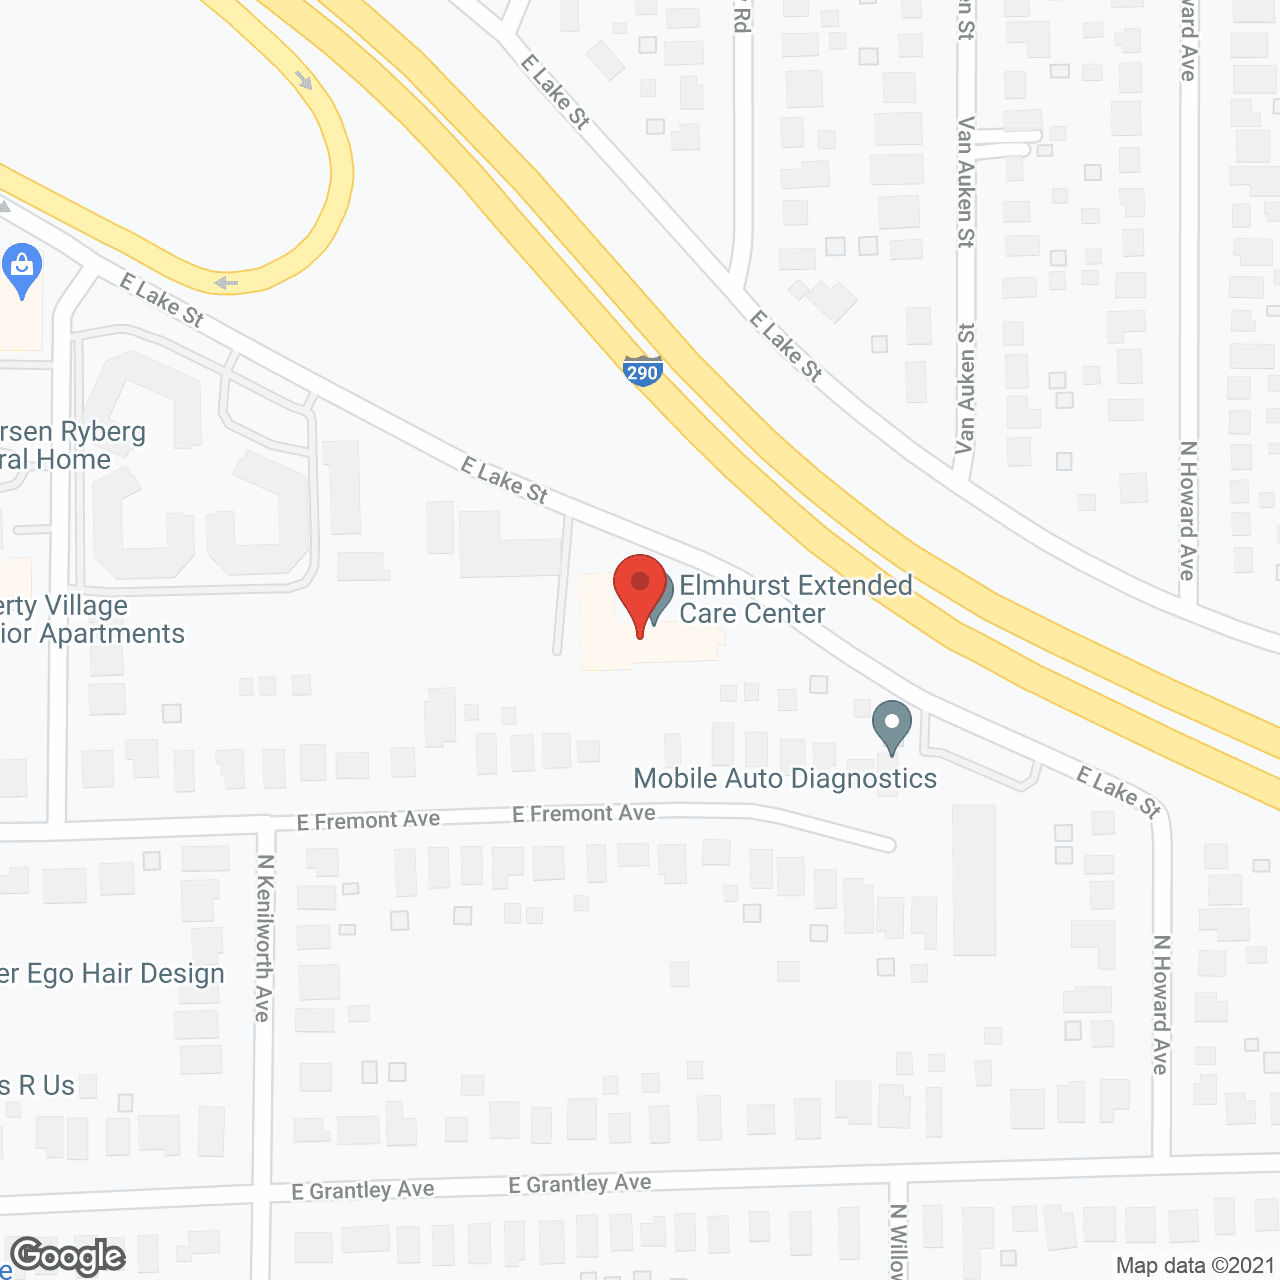 Elmhurst Extended Care Center in google map